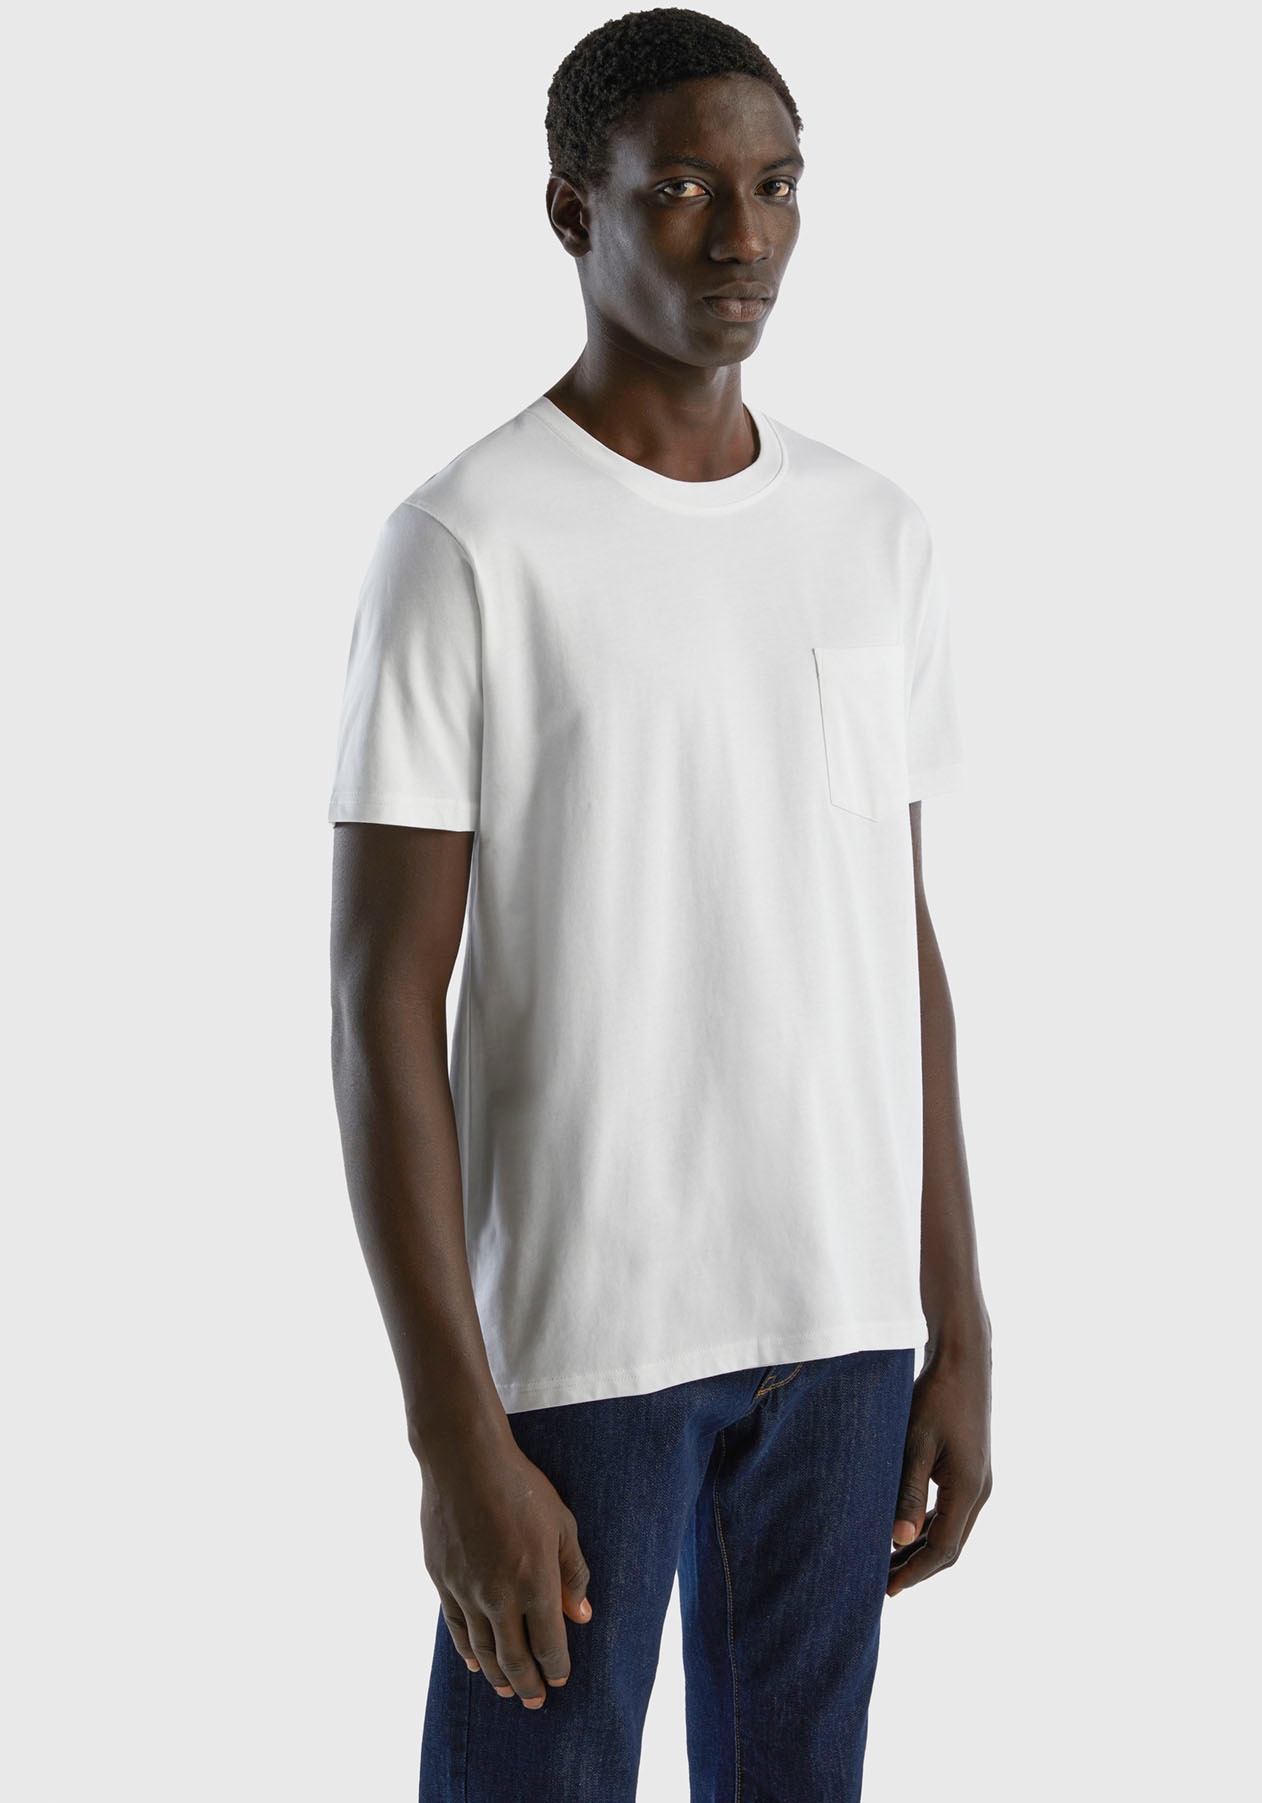 United Colors of Benetton T-Shirt, online aufgesetzter mit bei Brusttasche OTTO bestellen